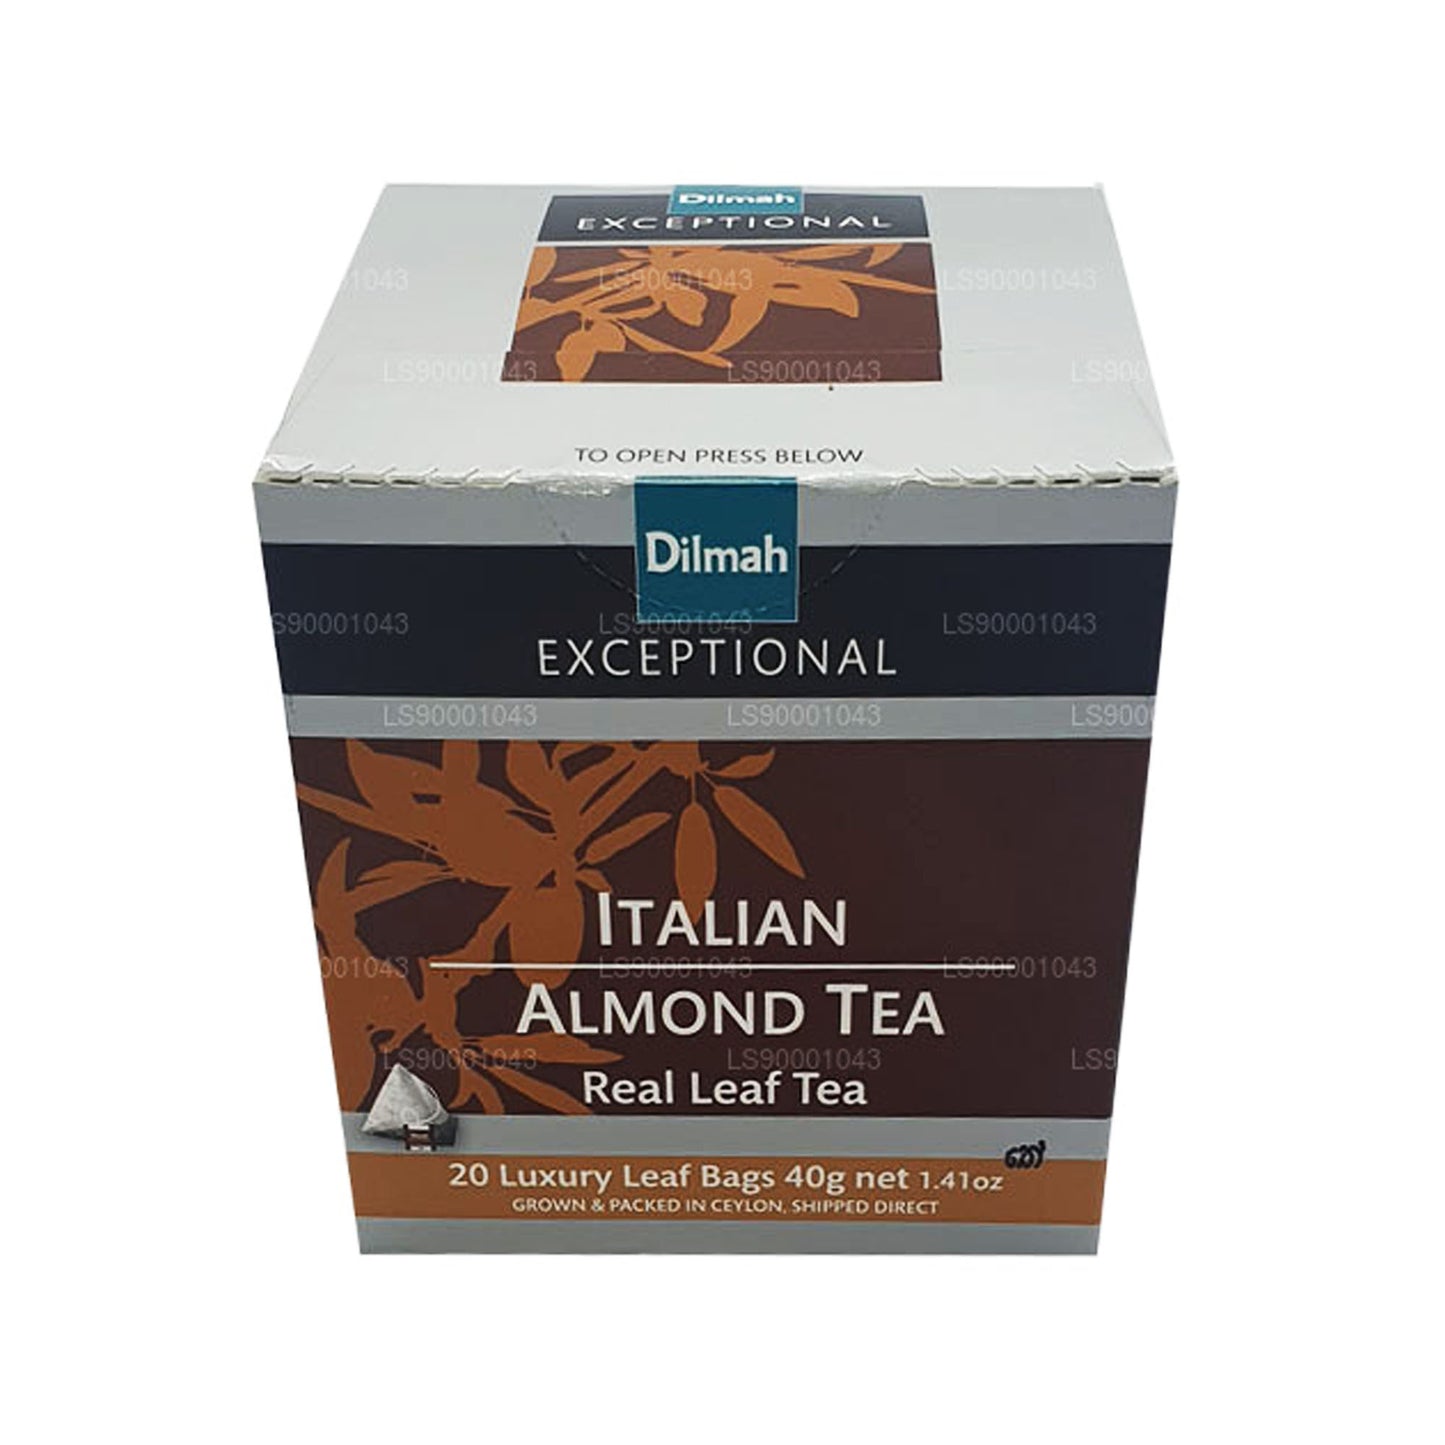 Té Dilmah Exceptional de hojas reales de almendras italianas (40 g), 20 bolsitas de té